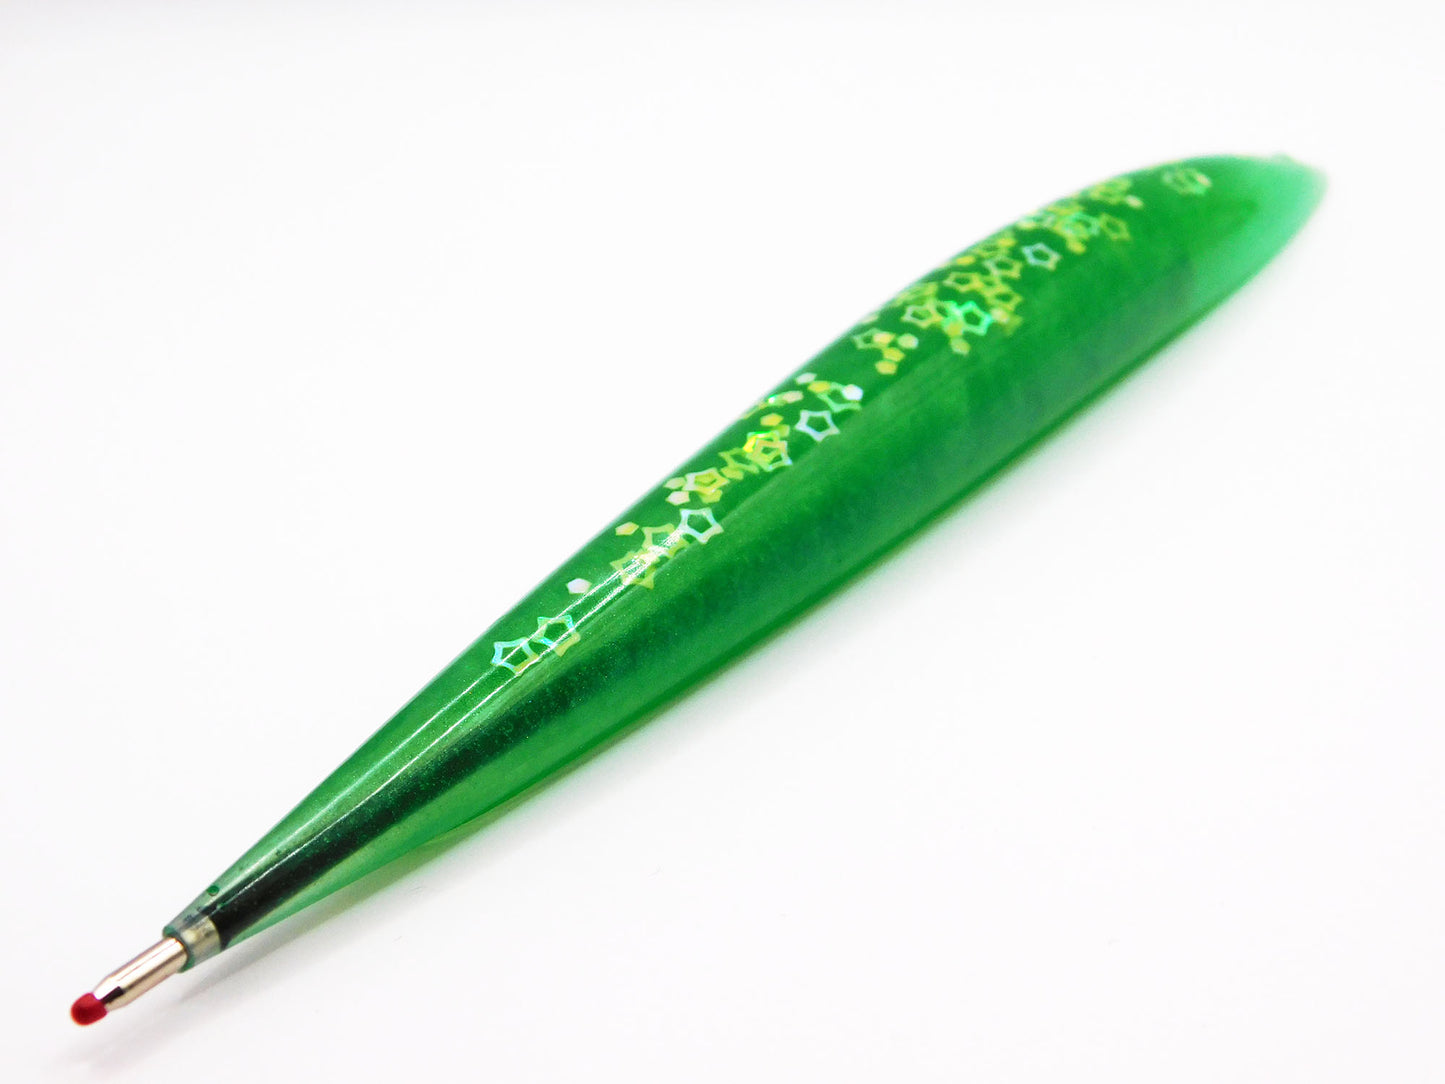 Handmade Resin Pens